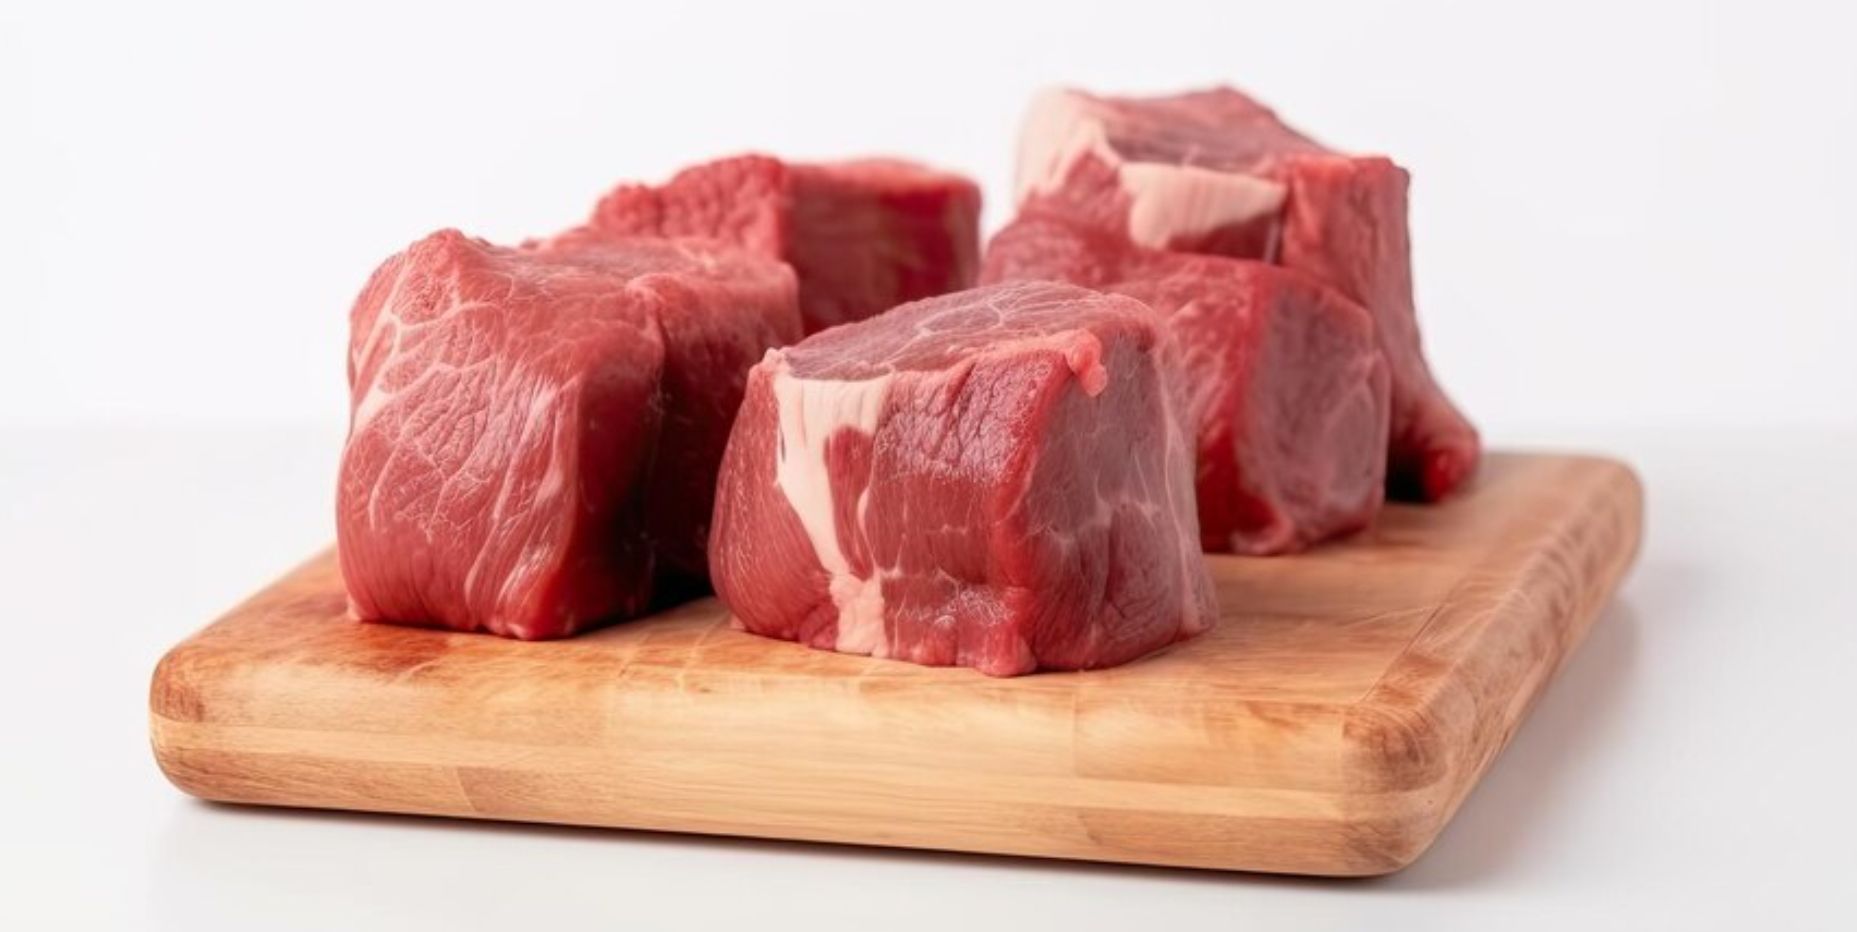 Cukup Mudah Diikuti, Simak Siasat Jitu Memasak Daging Sapi agar Hasilnya Rendah Kolesterol